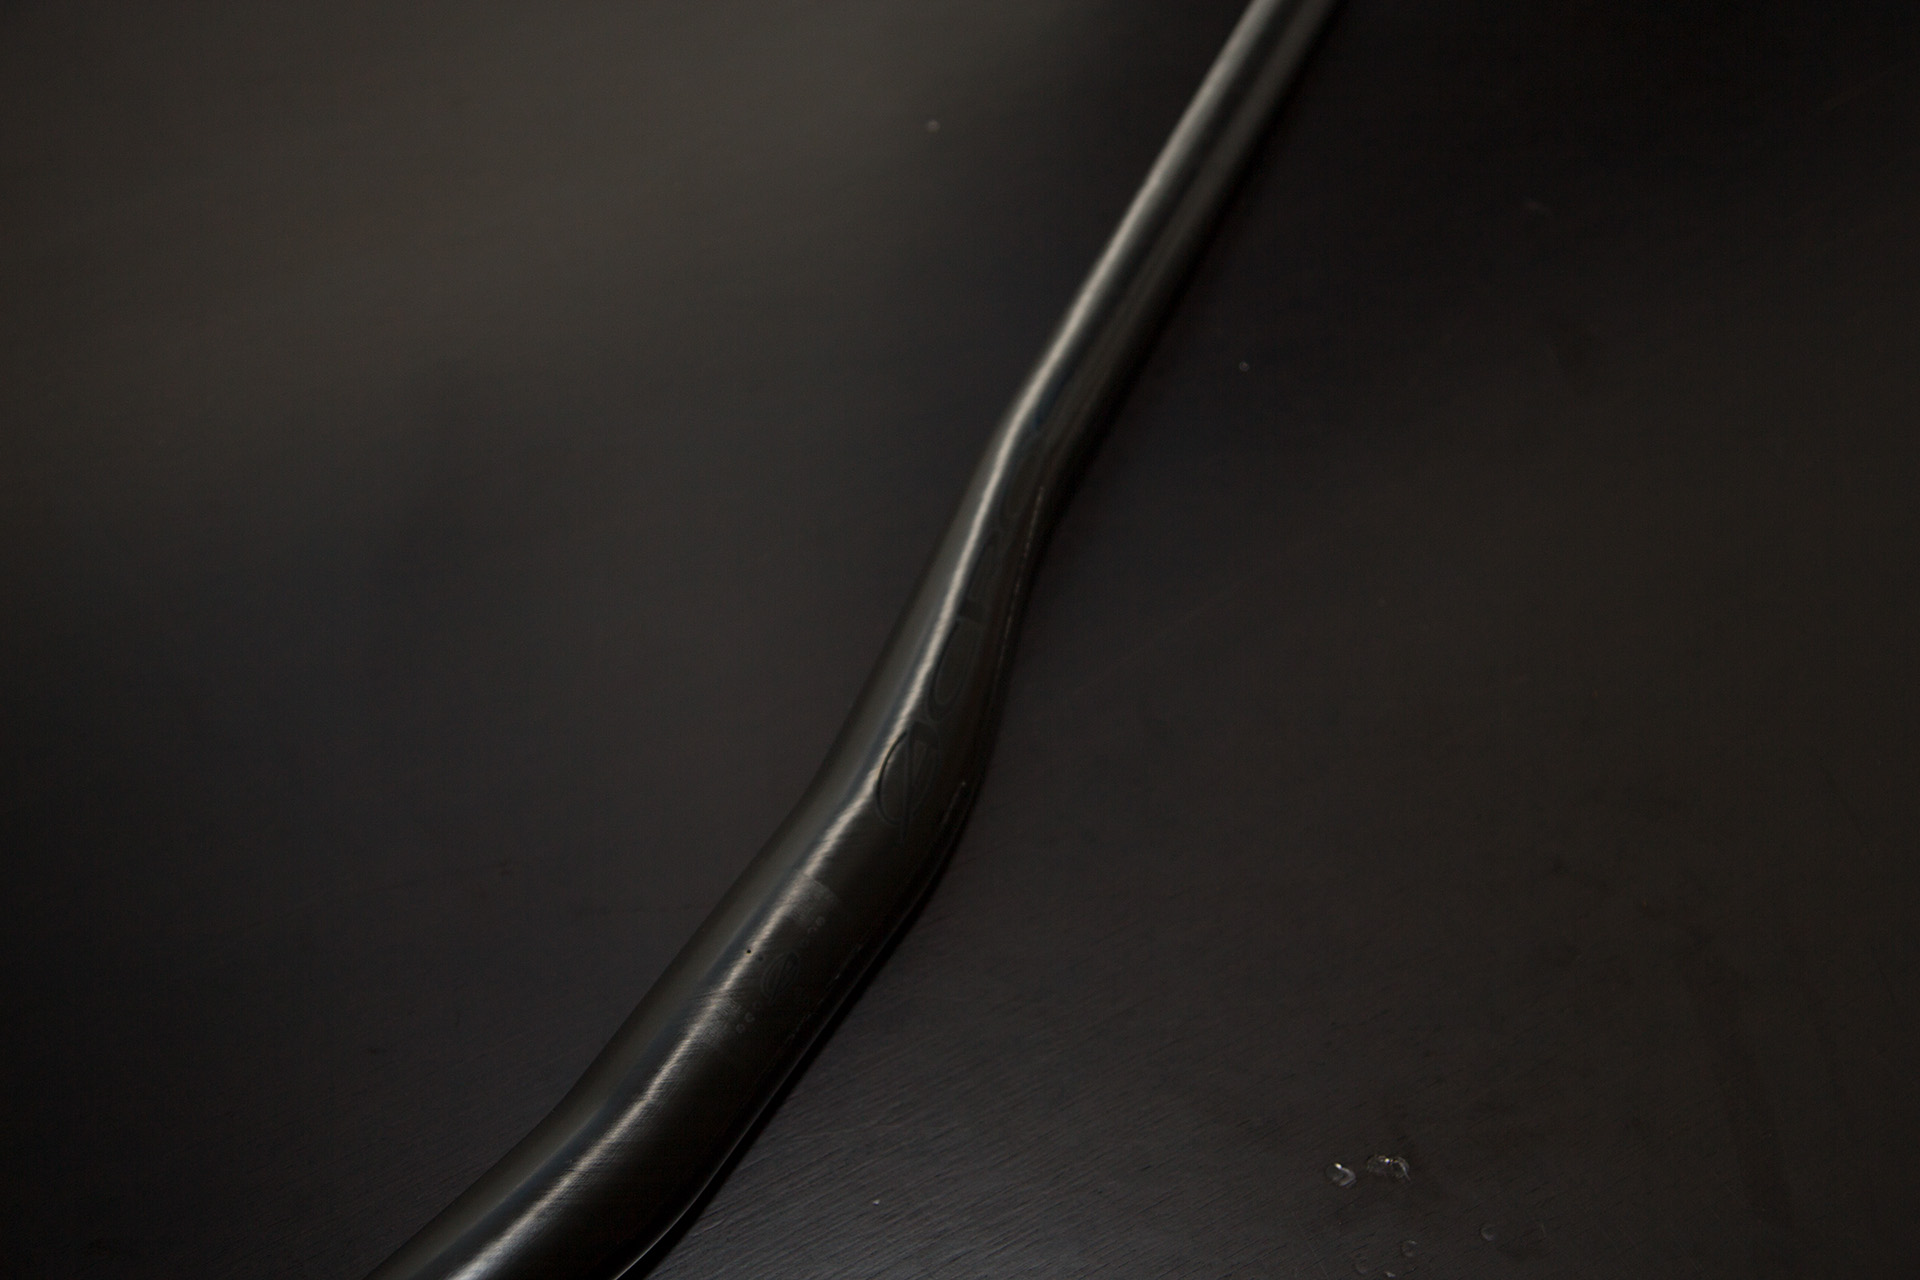 Der Carbon Bar kommt mit einer extra breiten 35 mm Klemmung, die höhere Steifigkeit bei geringerem Gewicht ermöglicht.